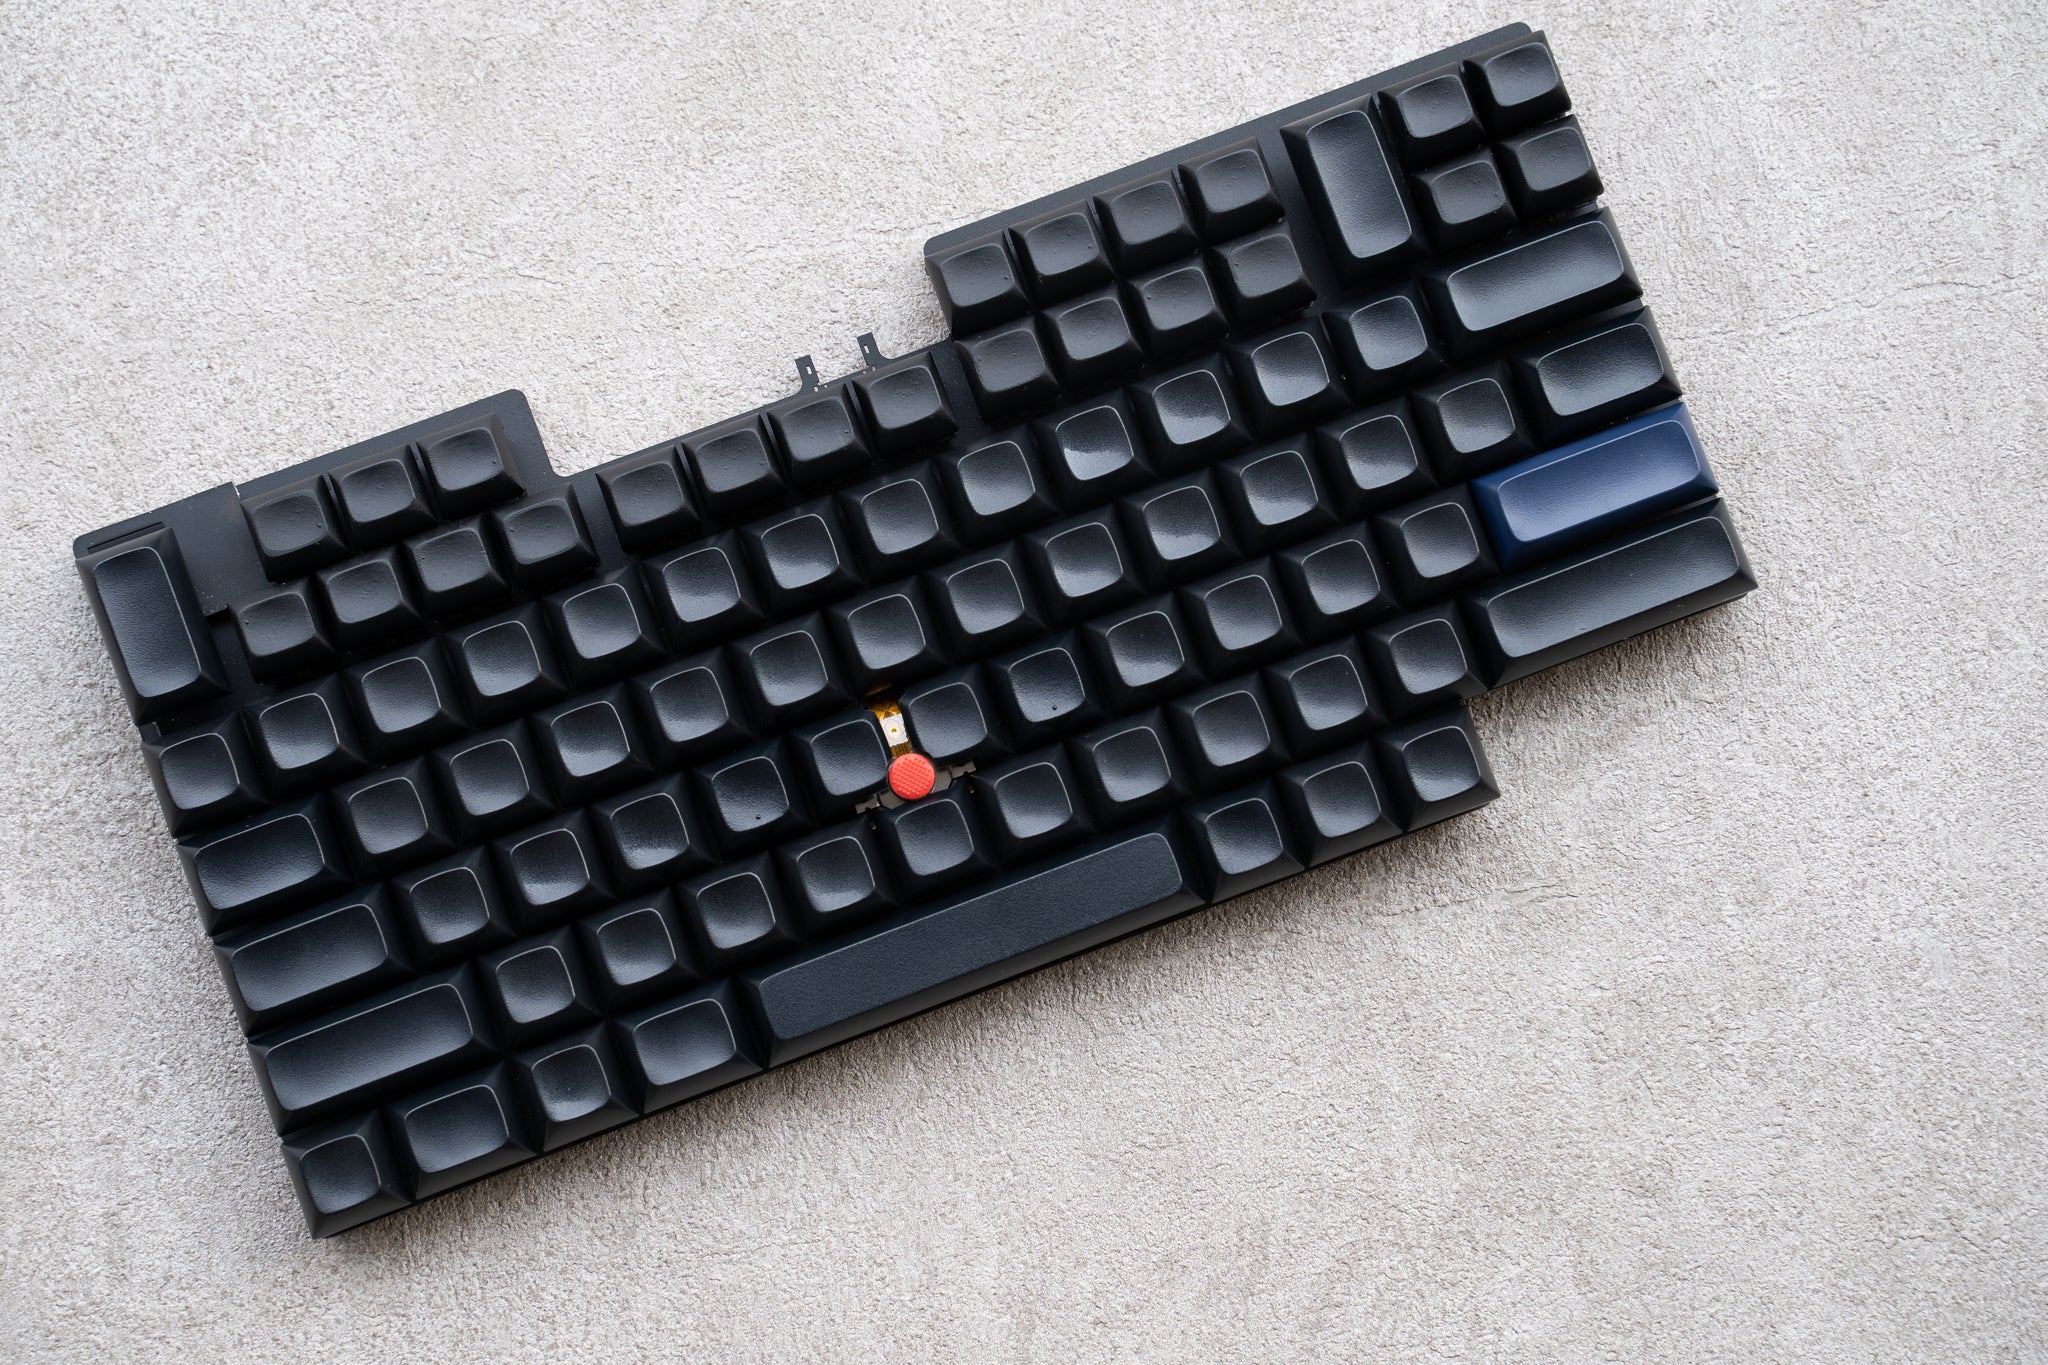 7-Row keyboard prototype